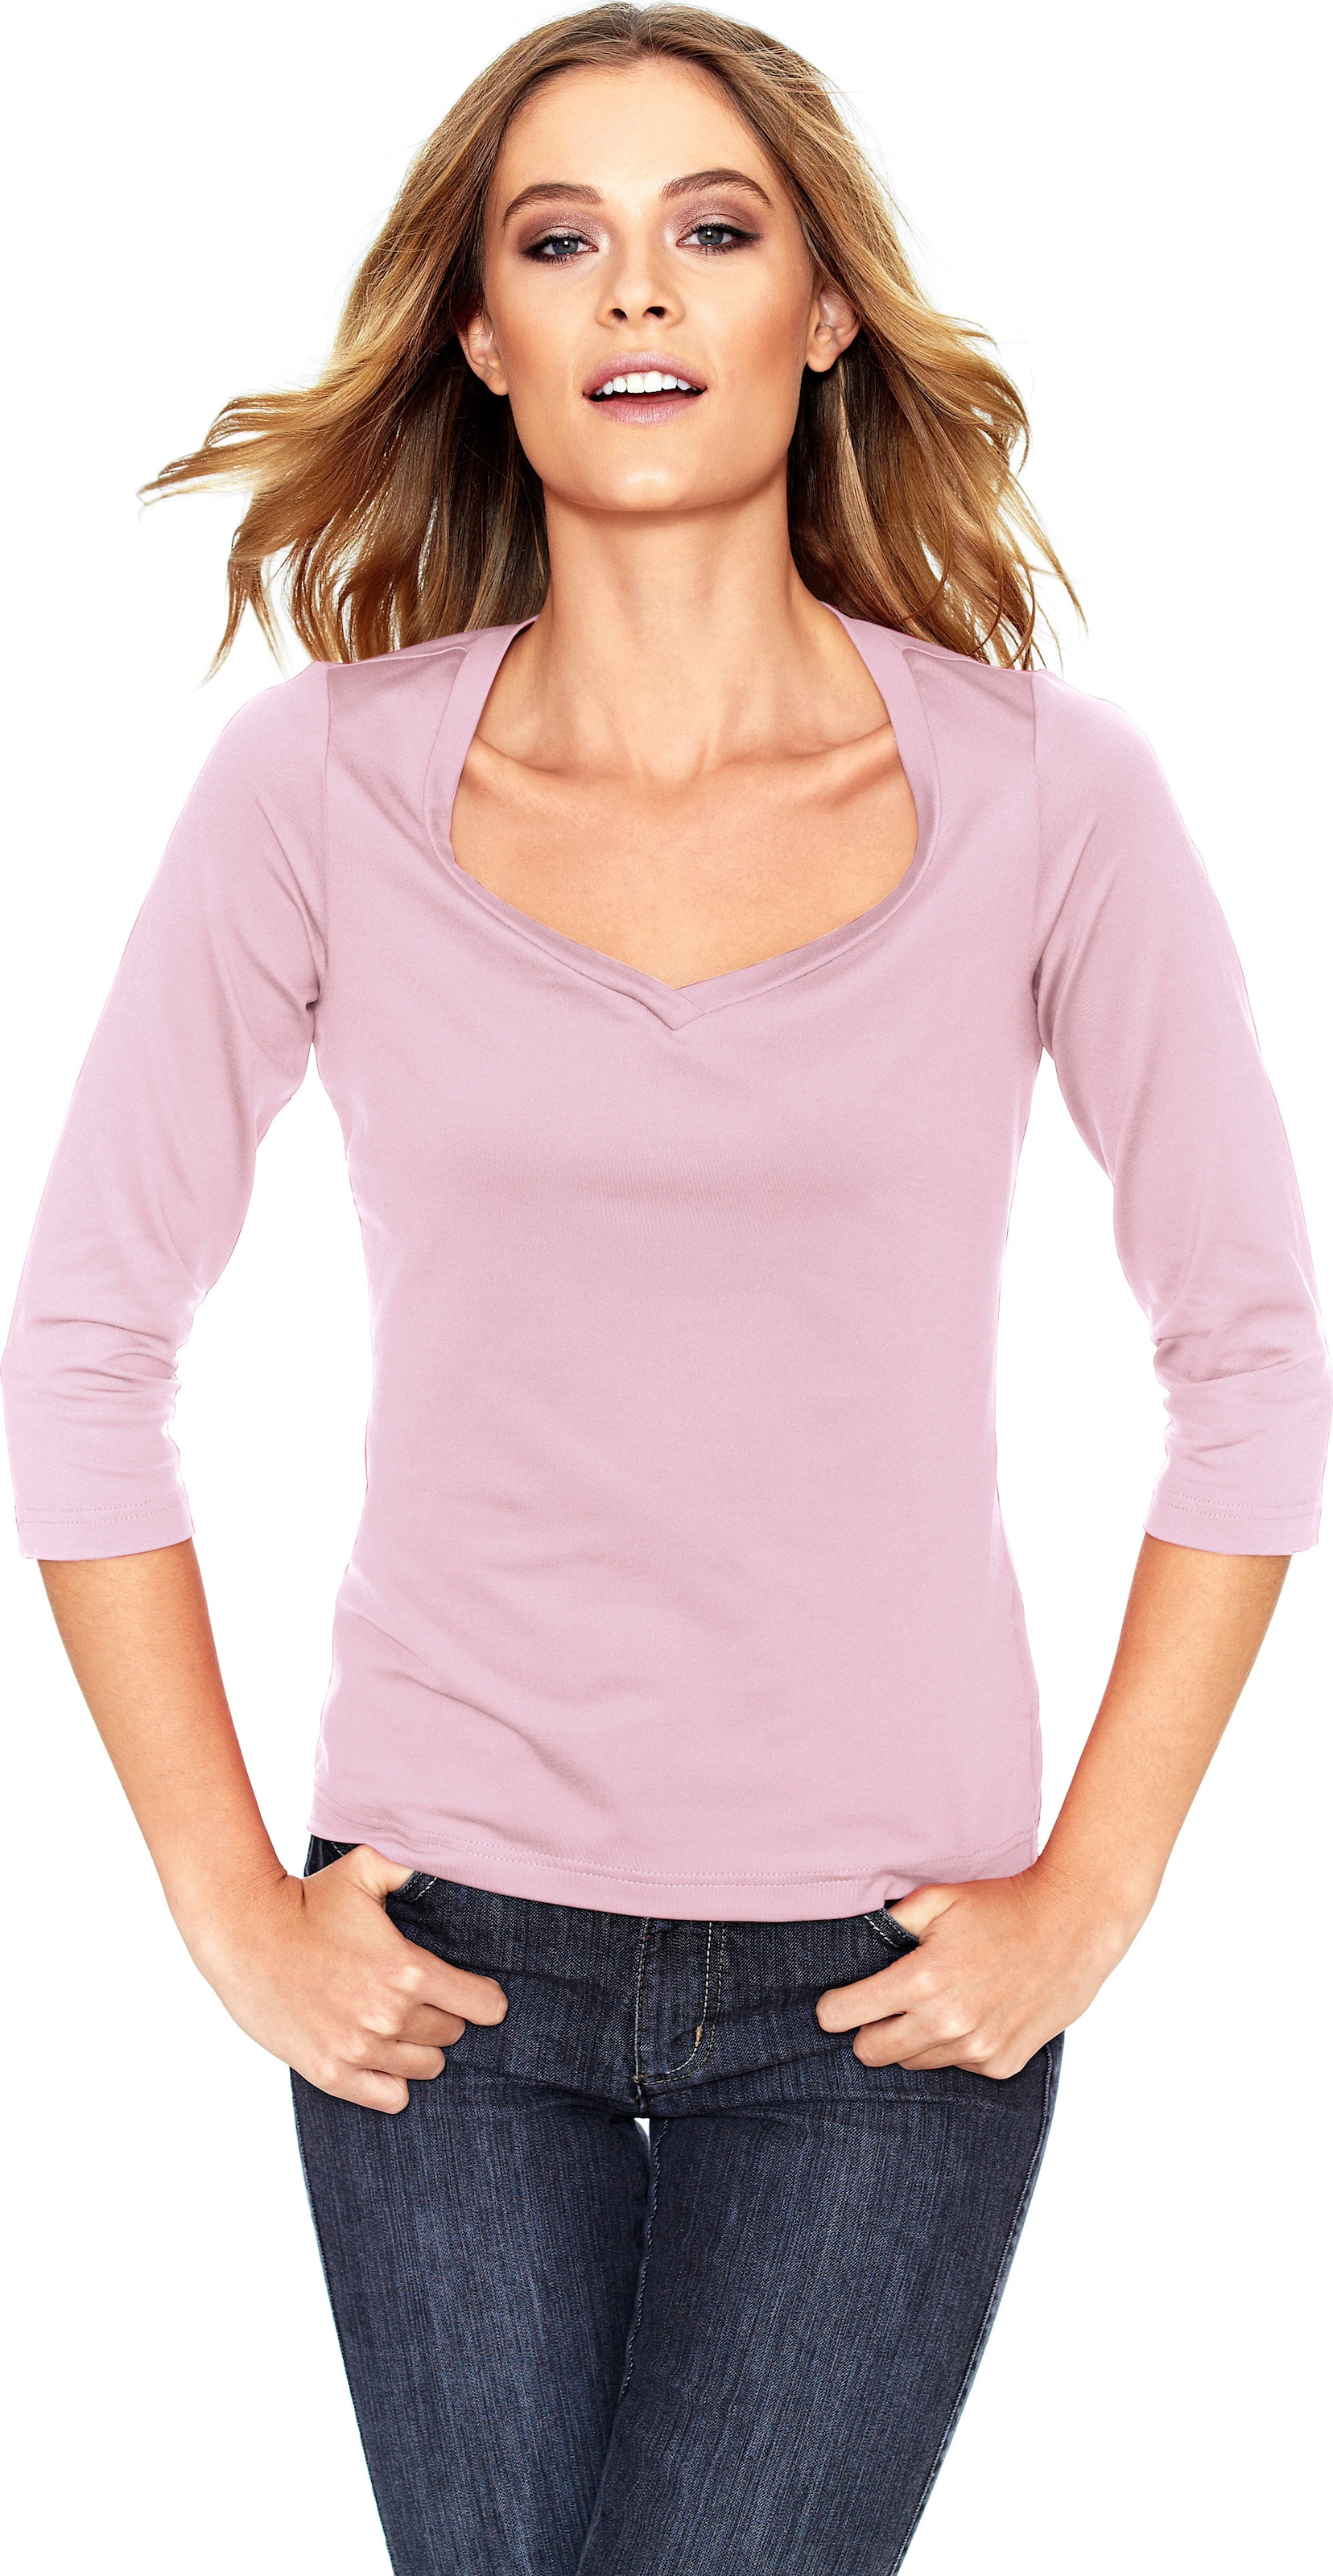 Act Ein günstig Kaufen-Shirt in rosé von heine. Shirt in rosé von heine <![CDATA[Shirt Femininer Kombi-Style aus Tactel, in angenehmer Stretch-Qualität. Mit hoher Farbbrillanz und leichtem Glanz. Figurbetont, mit Herzausschnitt und 3/4-Arm.]]>. 